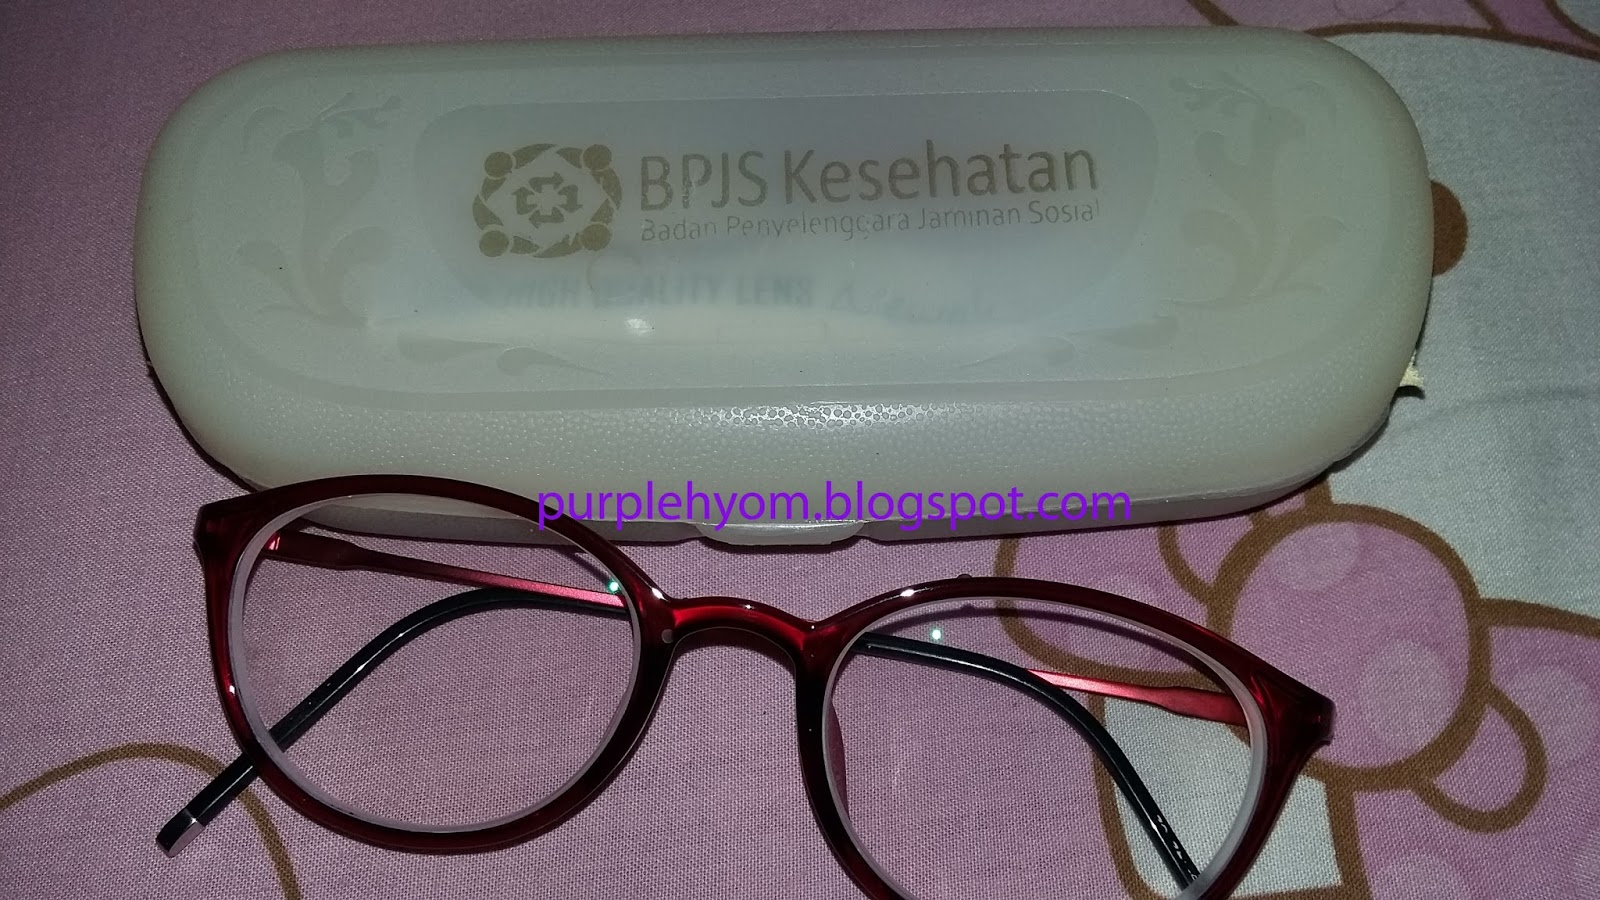 Purplehyom Membuat Kacamata  Memanfaatkan Klaim BPJS Kesehatan